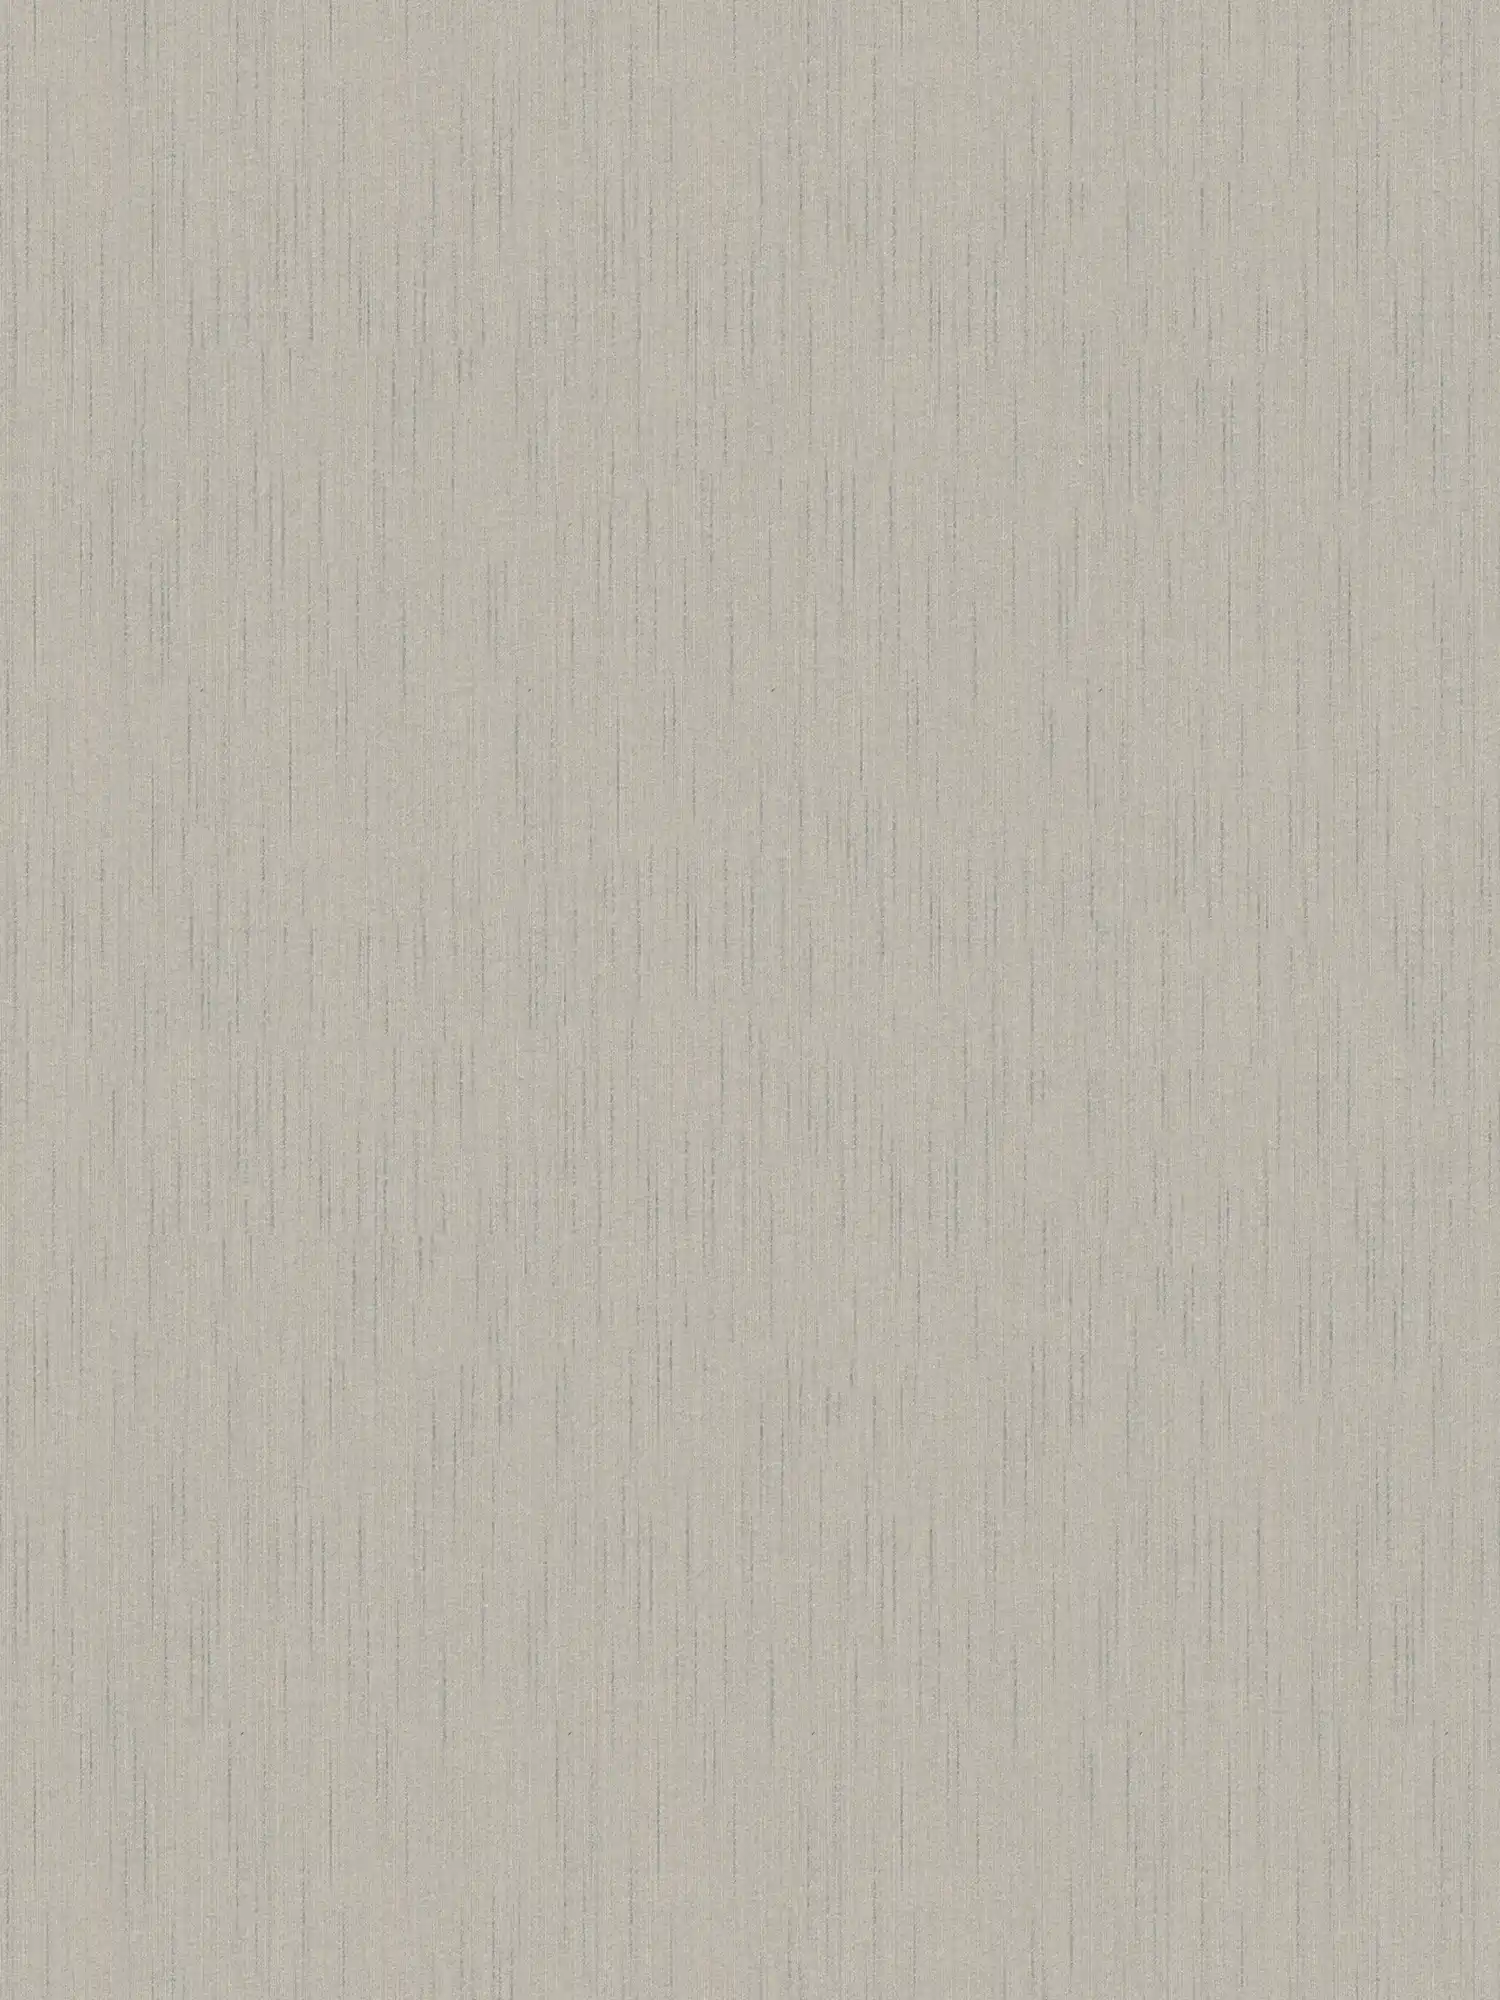 Tapete Grau mit meliertem Textileffekt & seidenmatt Finish
